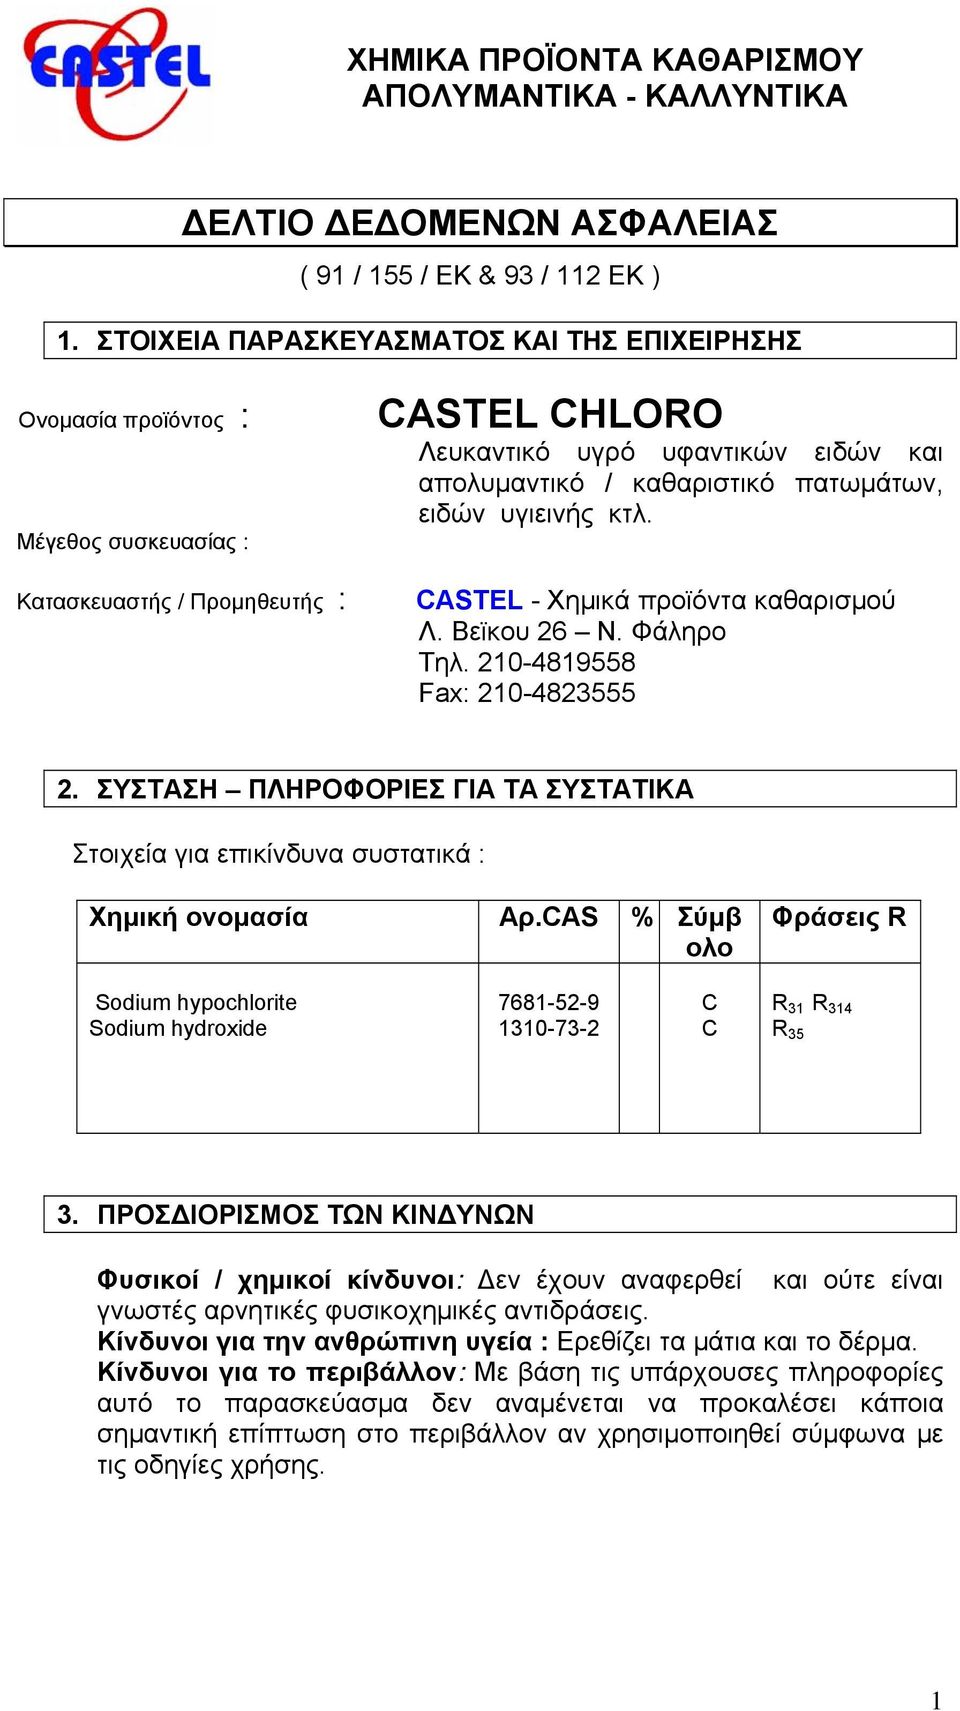 πατωμάτων, ειδών υγιεινής κτλ. CASTEL - Χημικά προϊόντα καθαρισμού Λ. Βεϊκου 26 Ν. Φάληρο Τηλ. 210-4819558 Fax: 210-4823555 2.